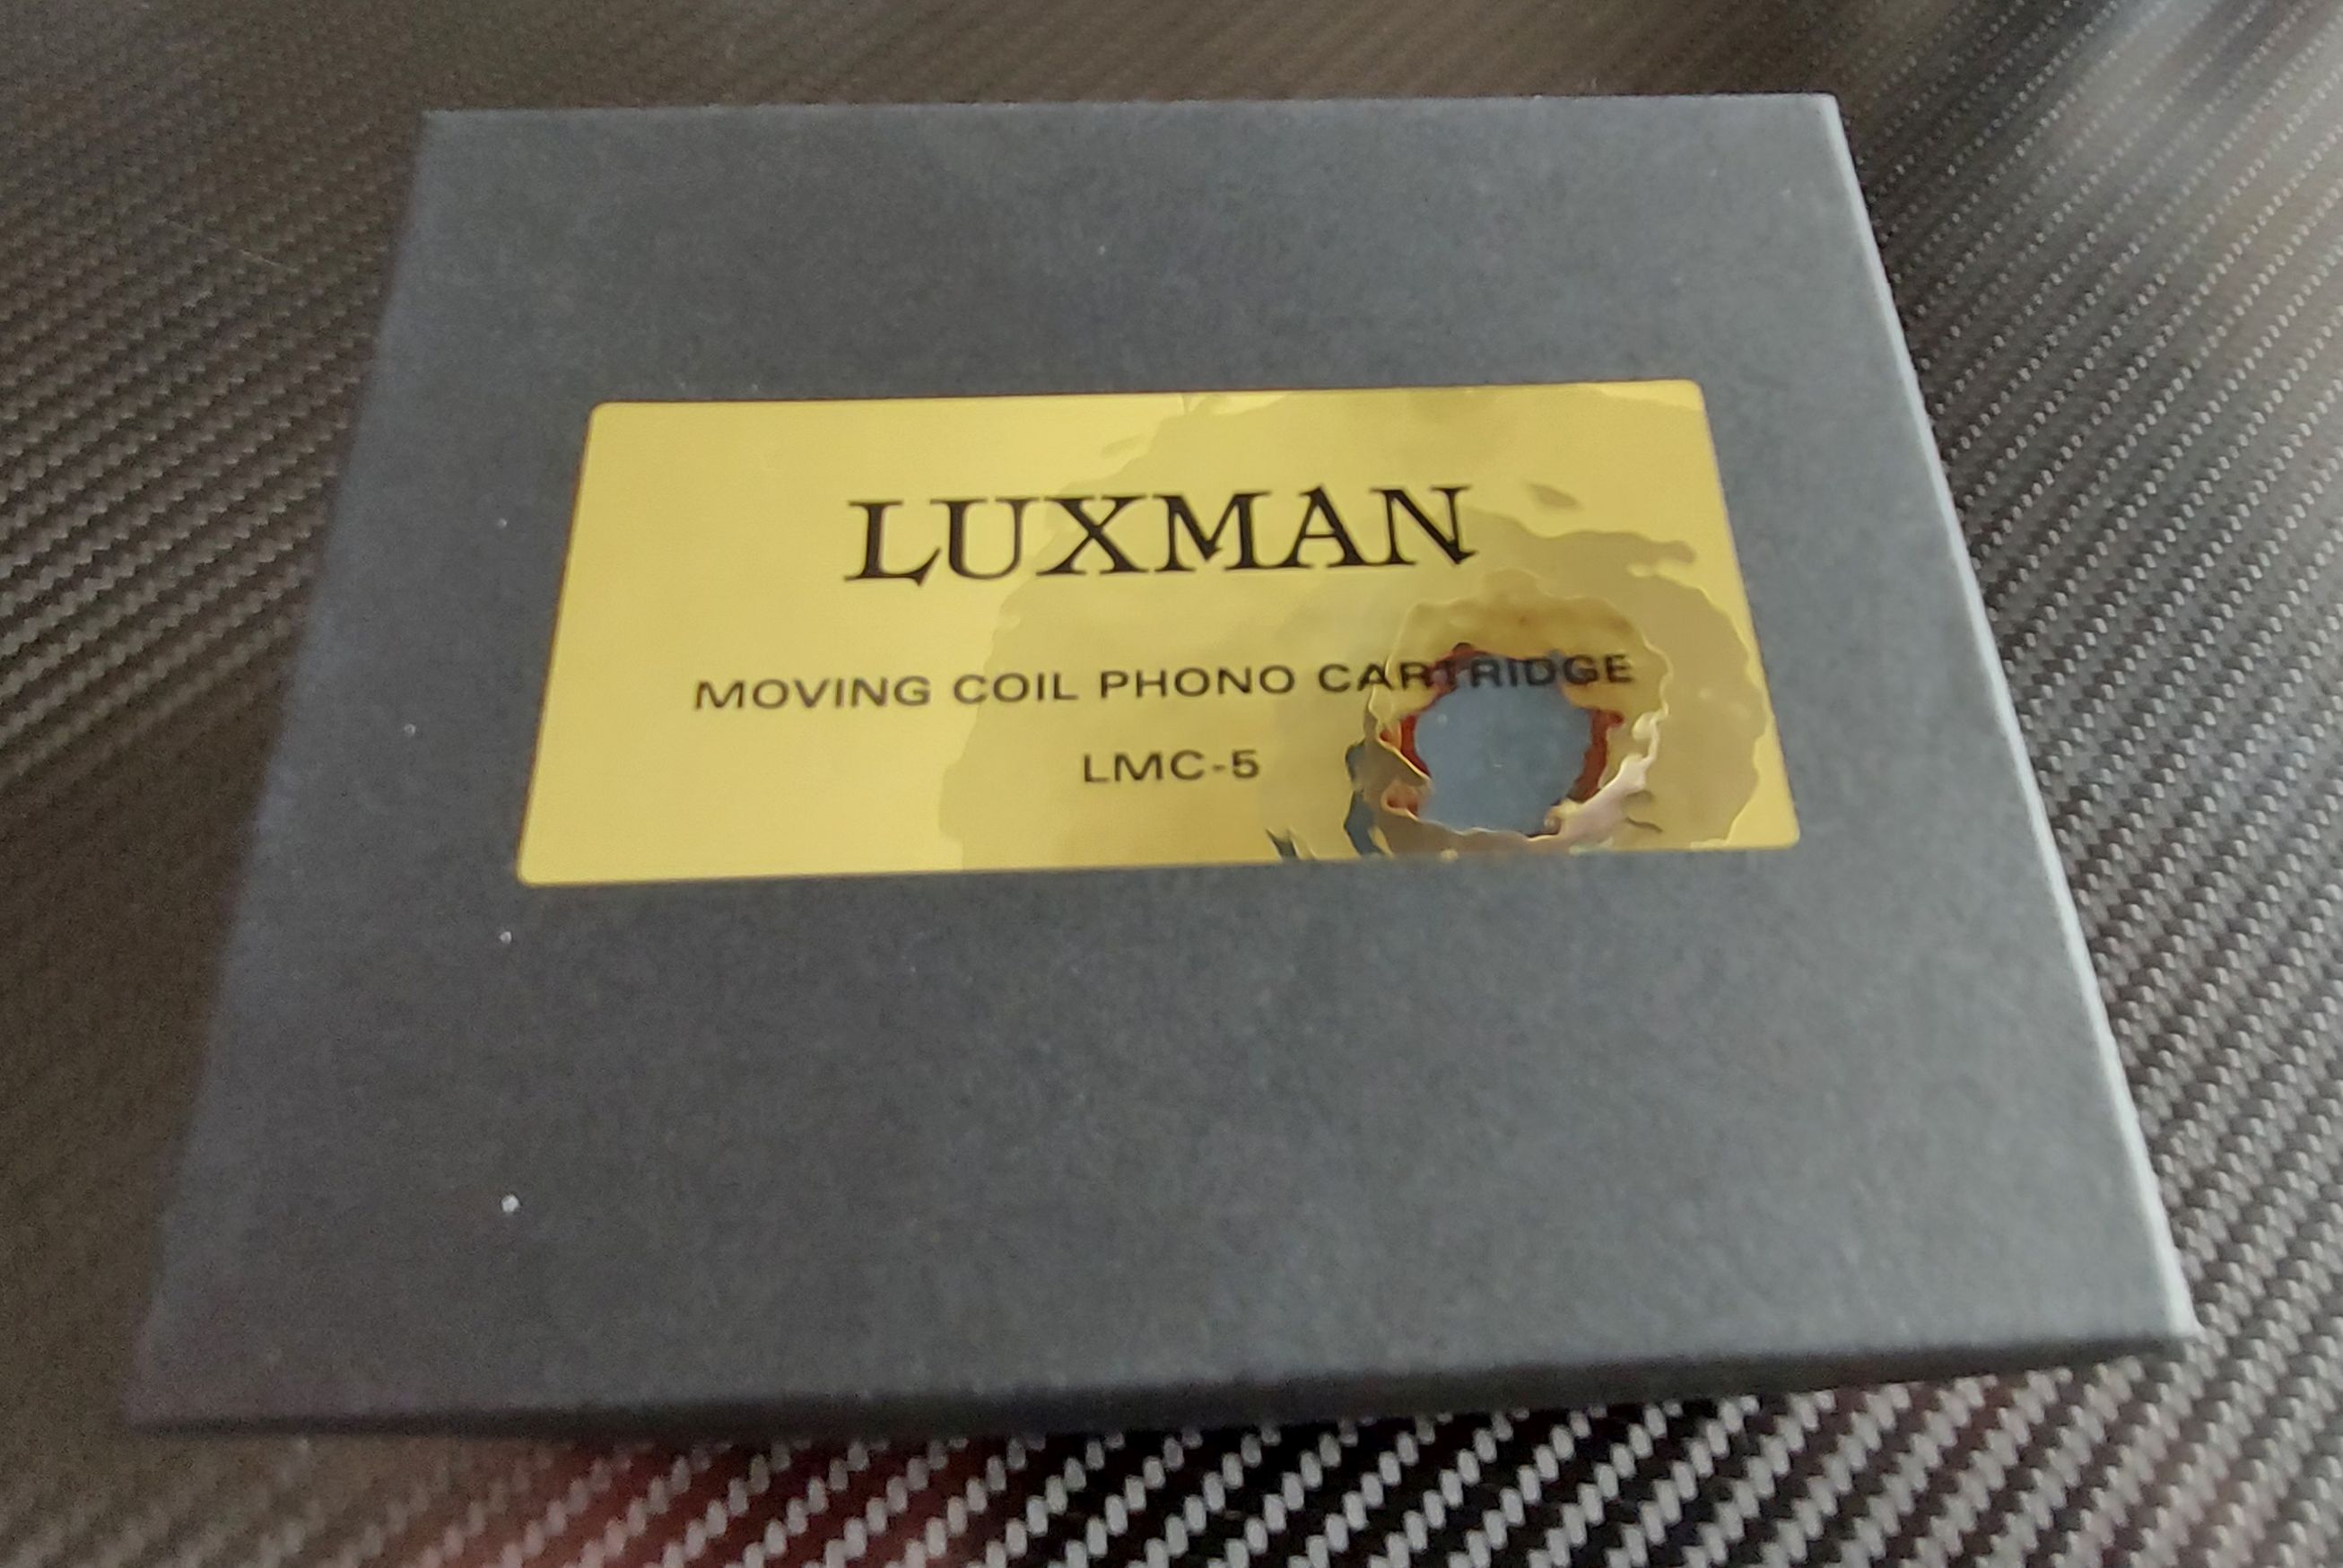 LMC-5 box